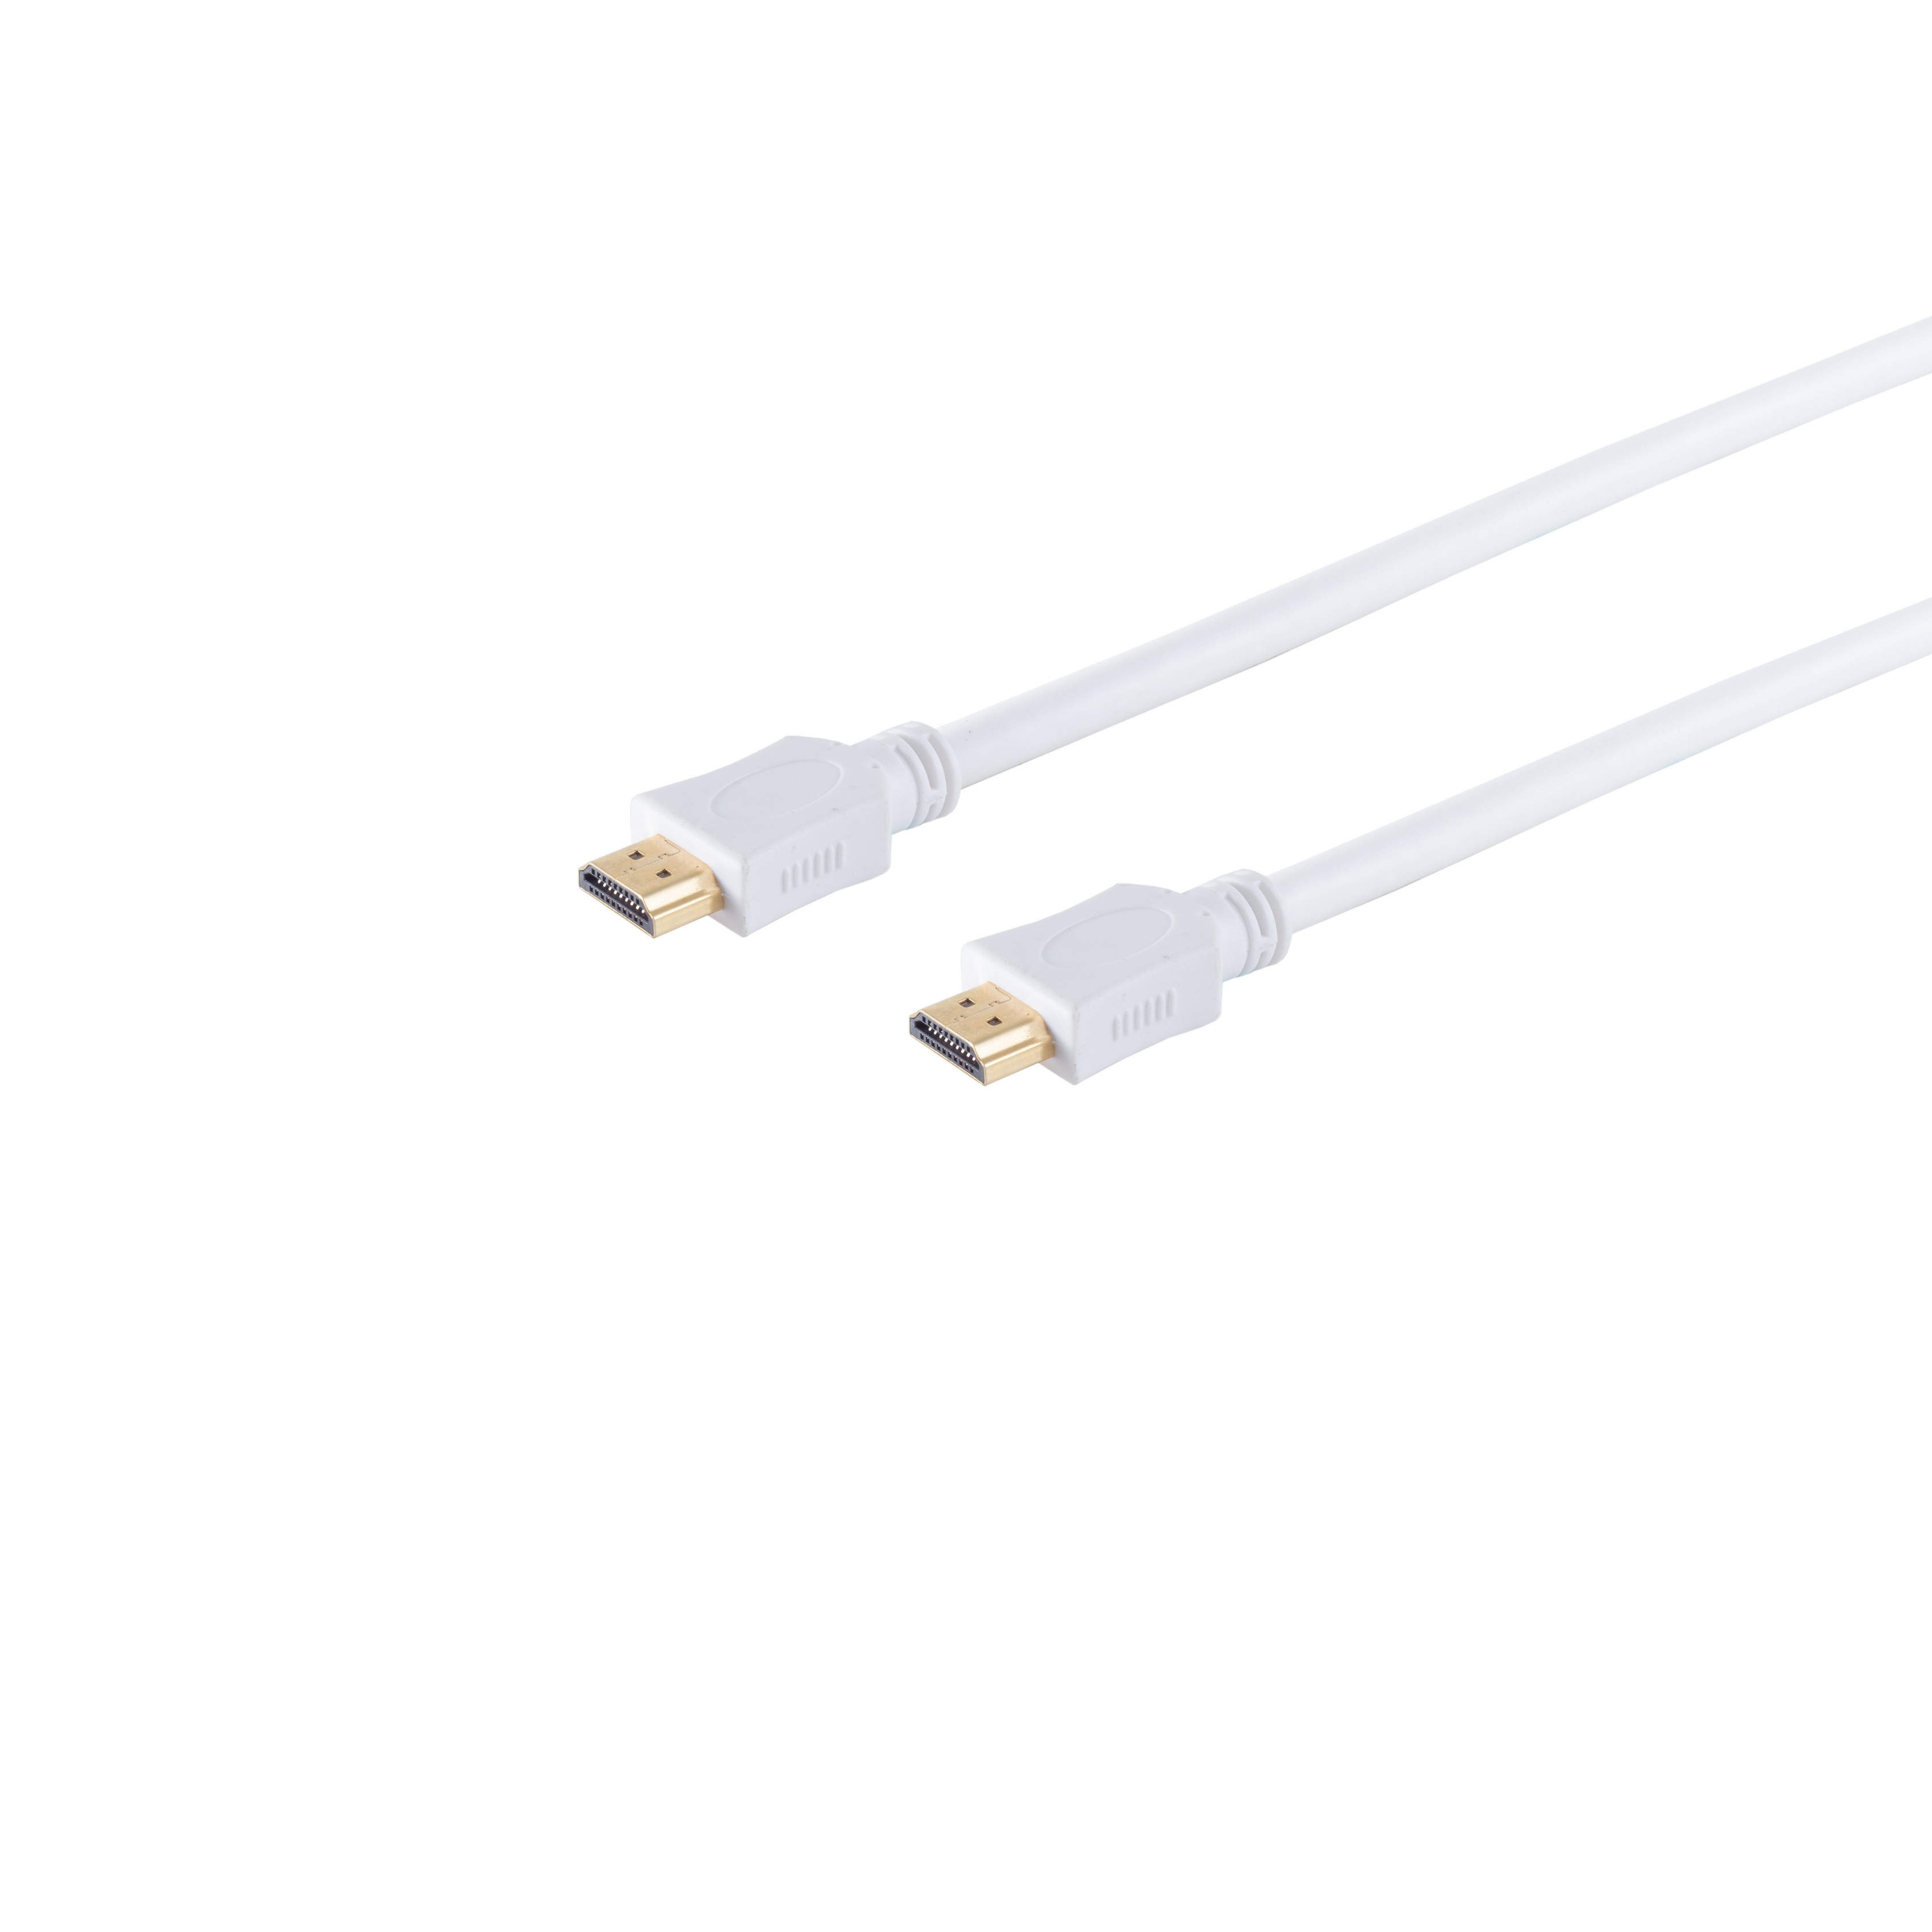 S/CONN MAXIMUM CONNECTIVITY HDMI A-Stecker/HDMI weiß verg. HDMI Kabel HEAC 7,5m A-Stecker